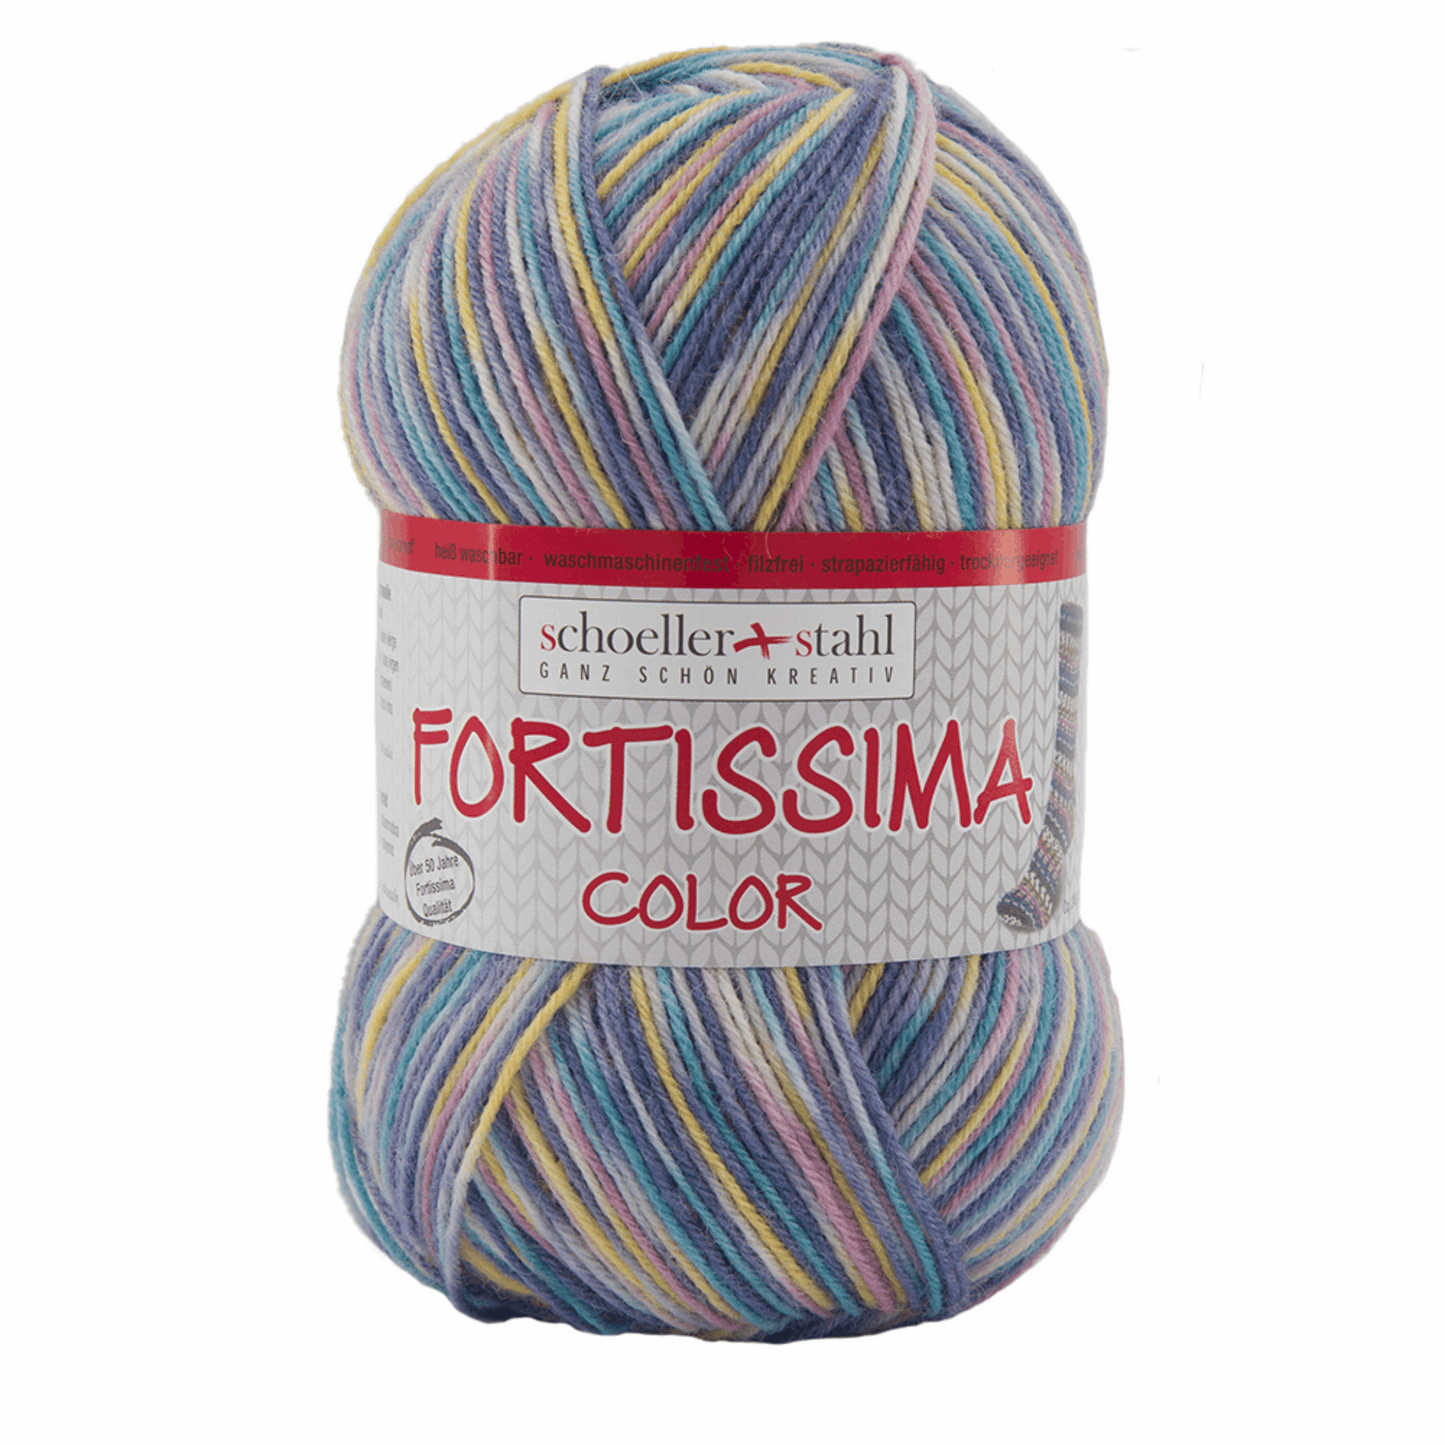 Fortissima socka 4fädig, 90028, Farbe 2411, natur